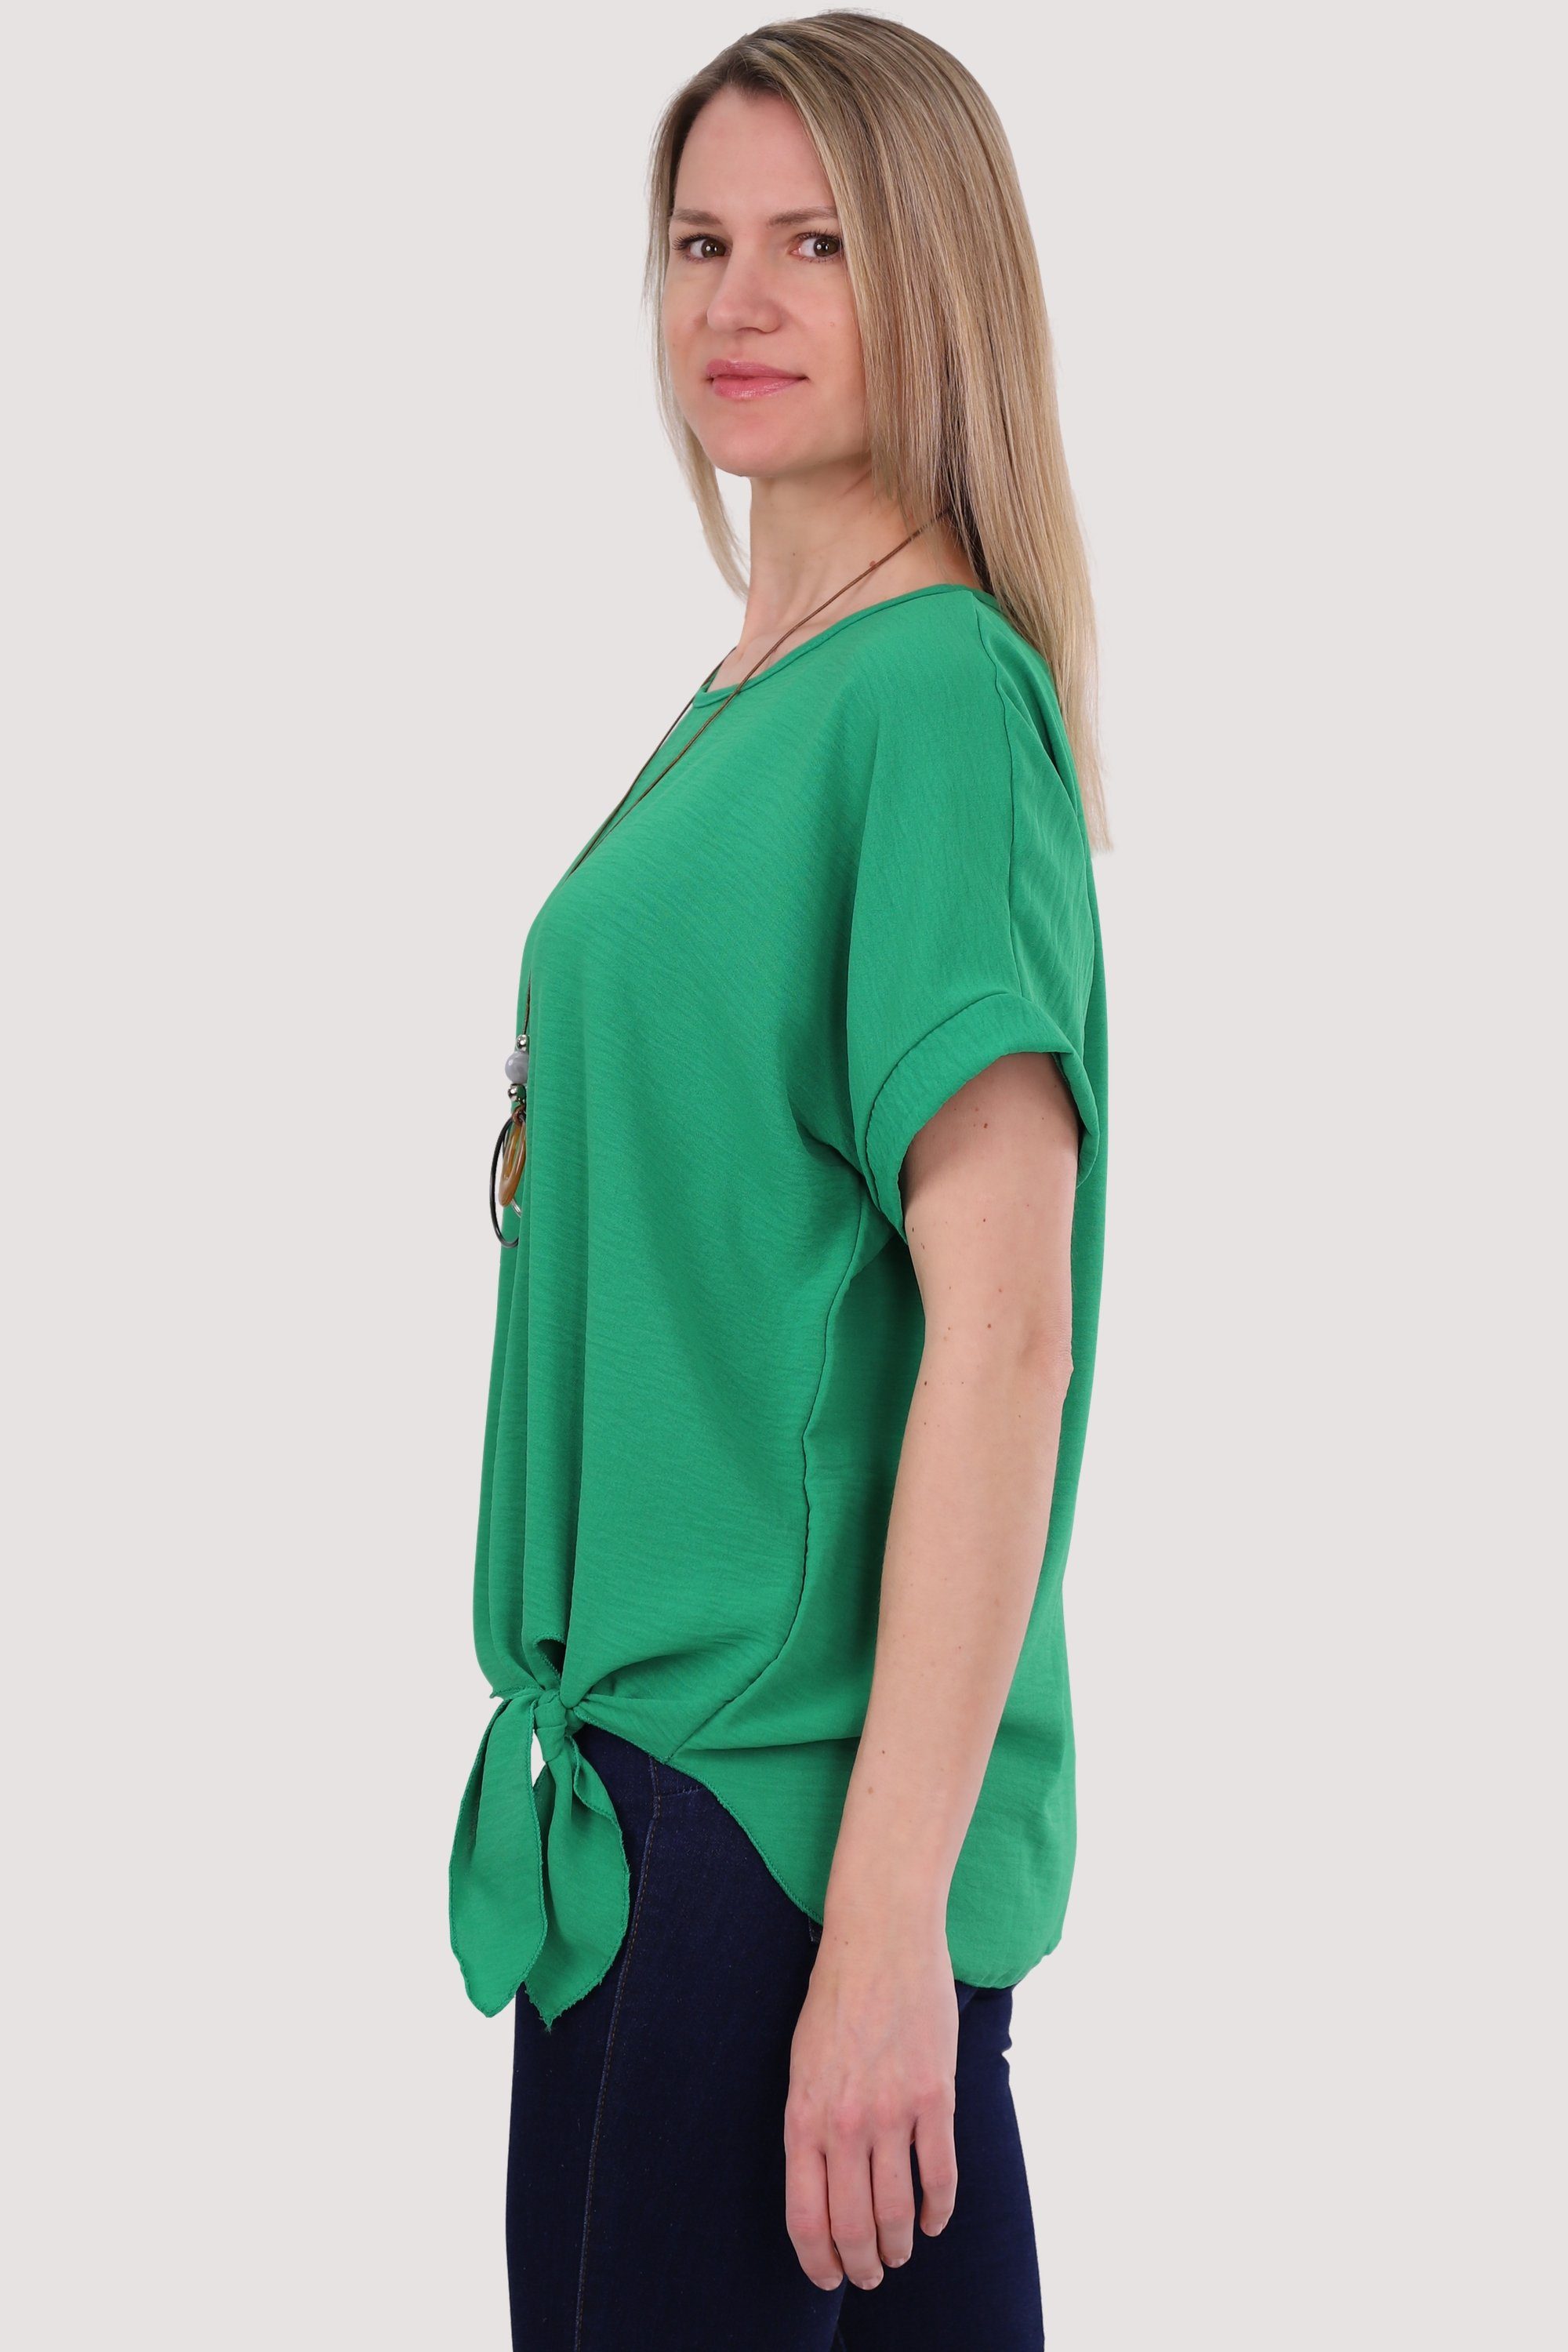 Bindeknoten grün Blusenshirt 10508 fashion Kette more than malito mit Einheitsgröße und